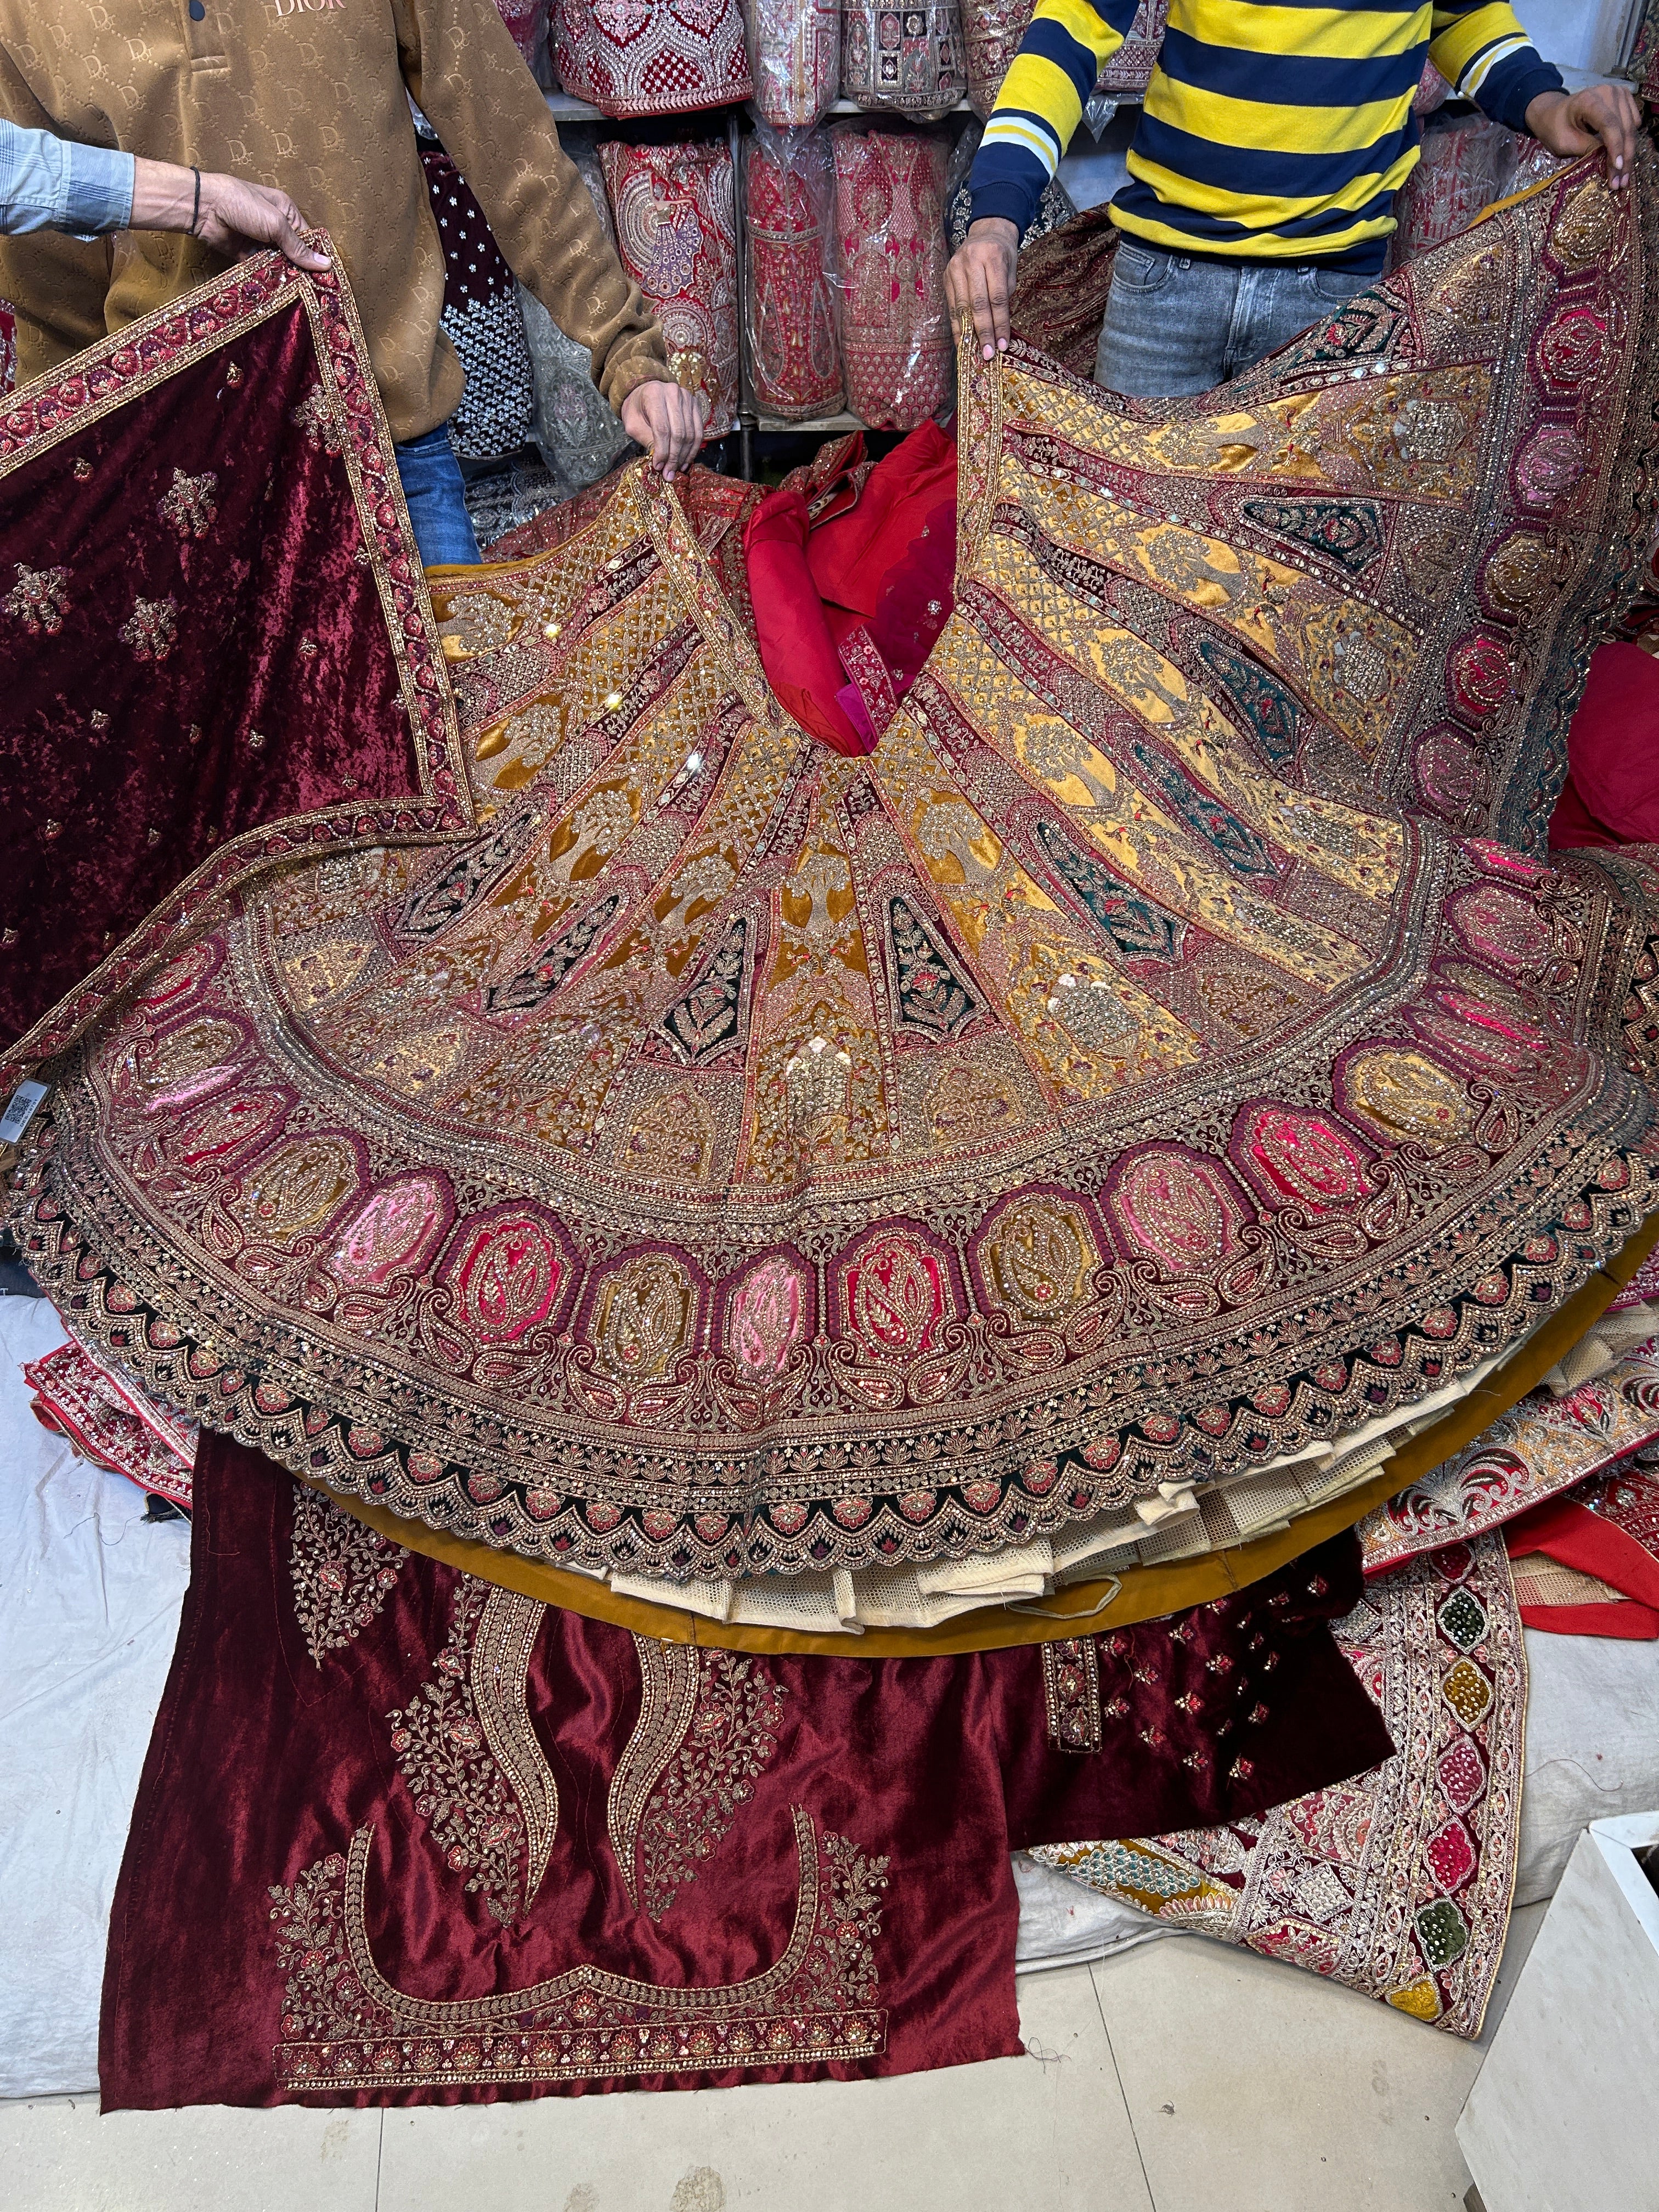 Raghav creation, 625 katra Asharfi Chandni chowk Delhi, 9818468432,  9268306613 | Indian bridal outfits, Bridal outfits, Indian bridal